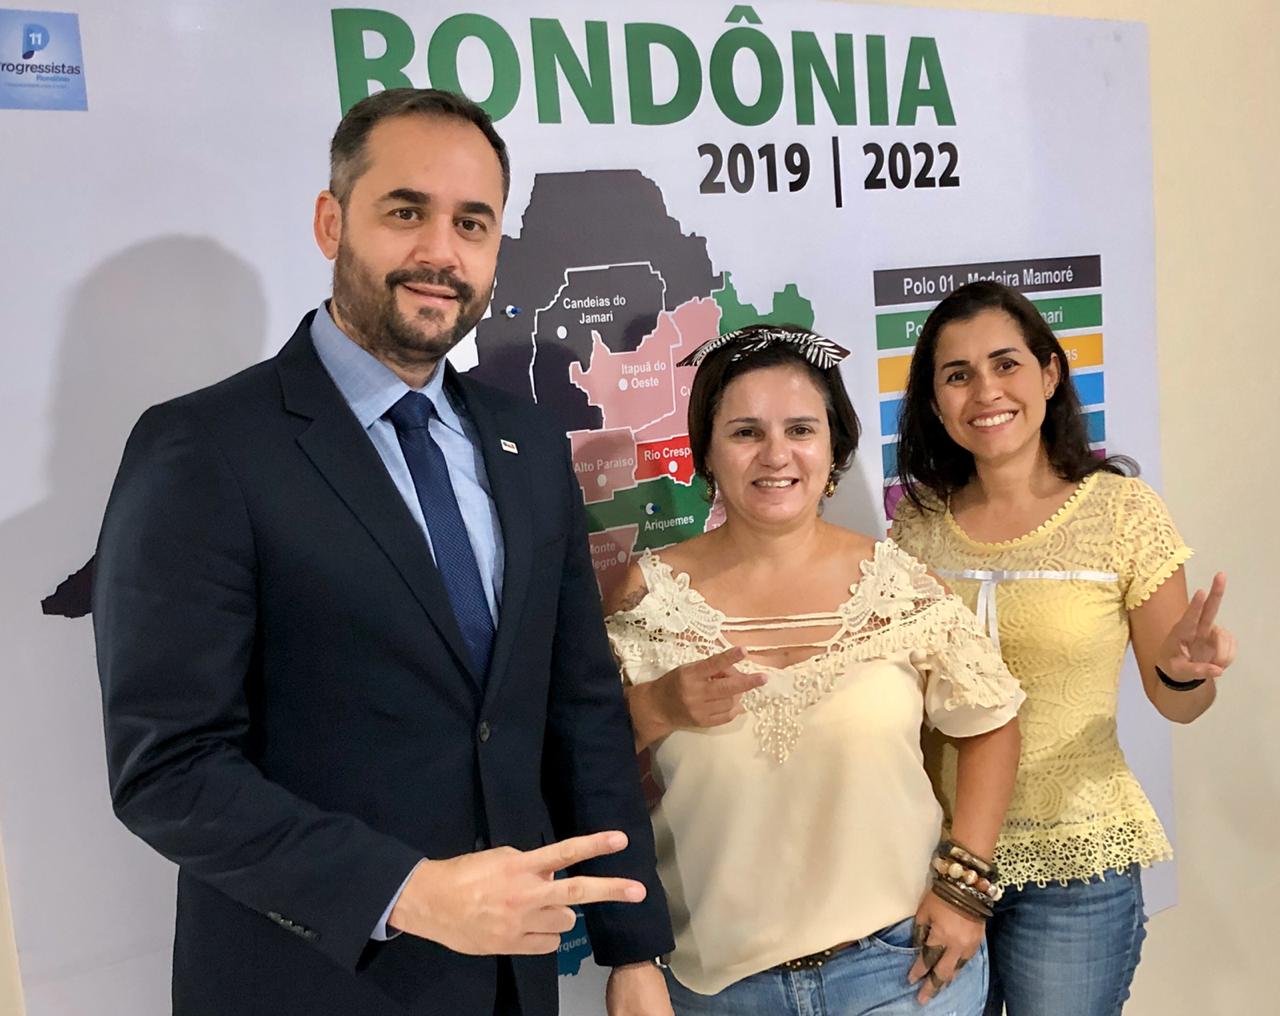 Progressistas em Rondônia fazem balanço positivo das ações de 2019 - progressistas - progressistas rondonia